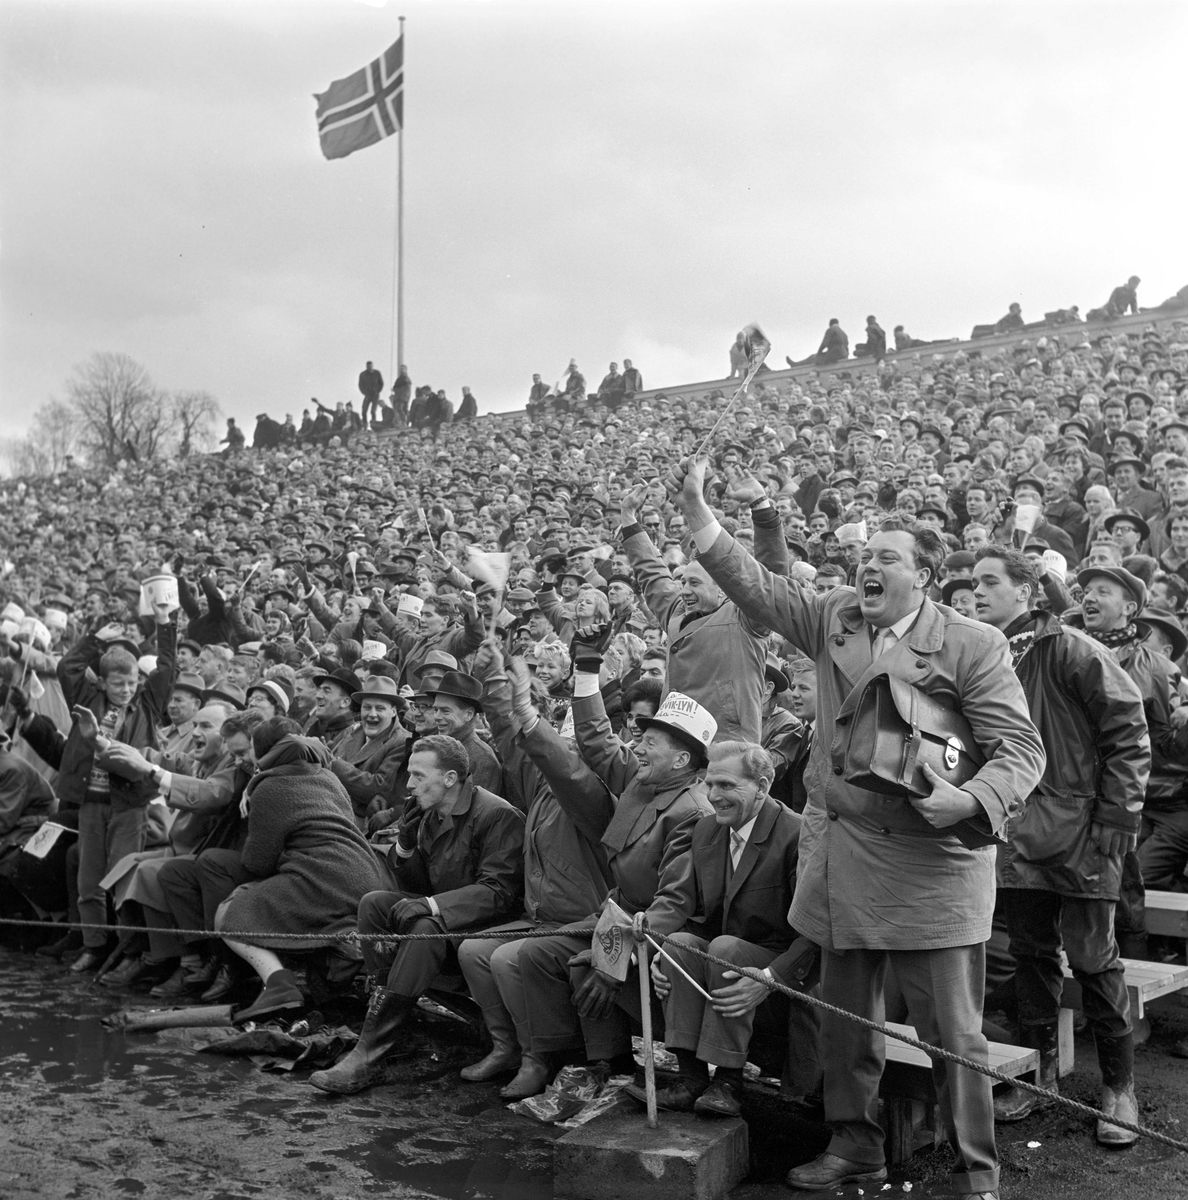 Serie. Fotballfinale mellom Gjøvik-Lyn (i hvitt) og Vard. Fotografert 1962.